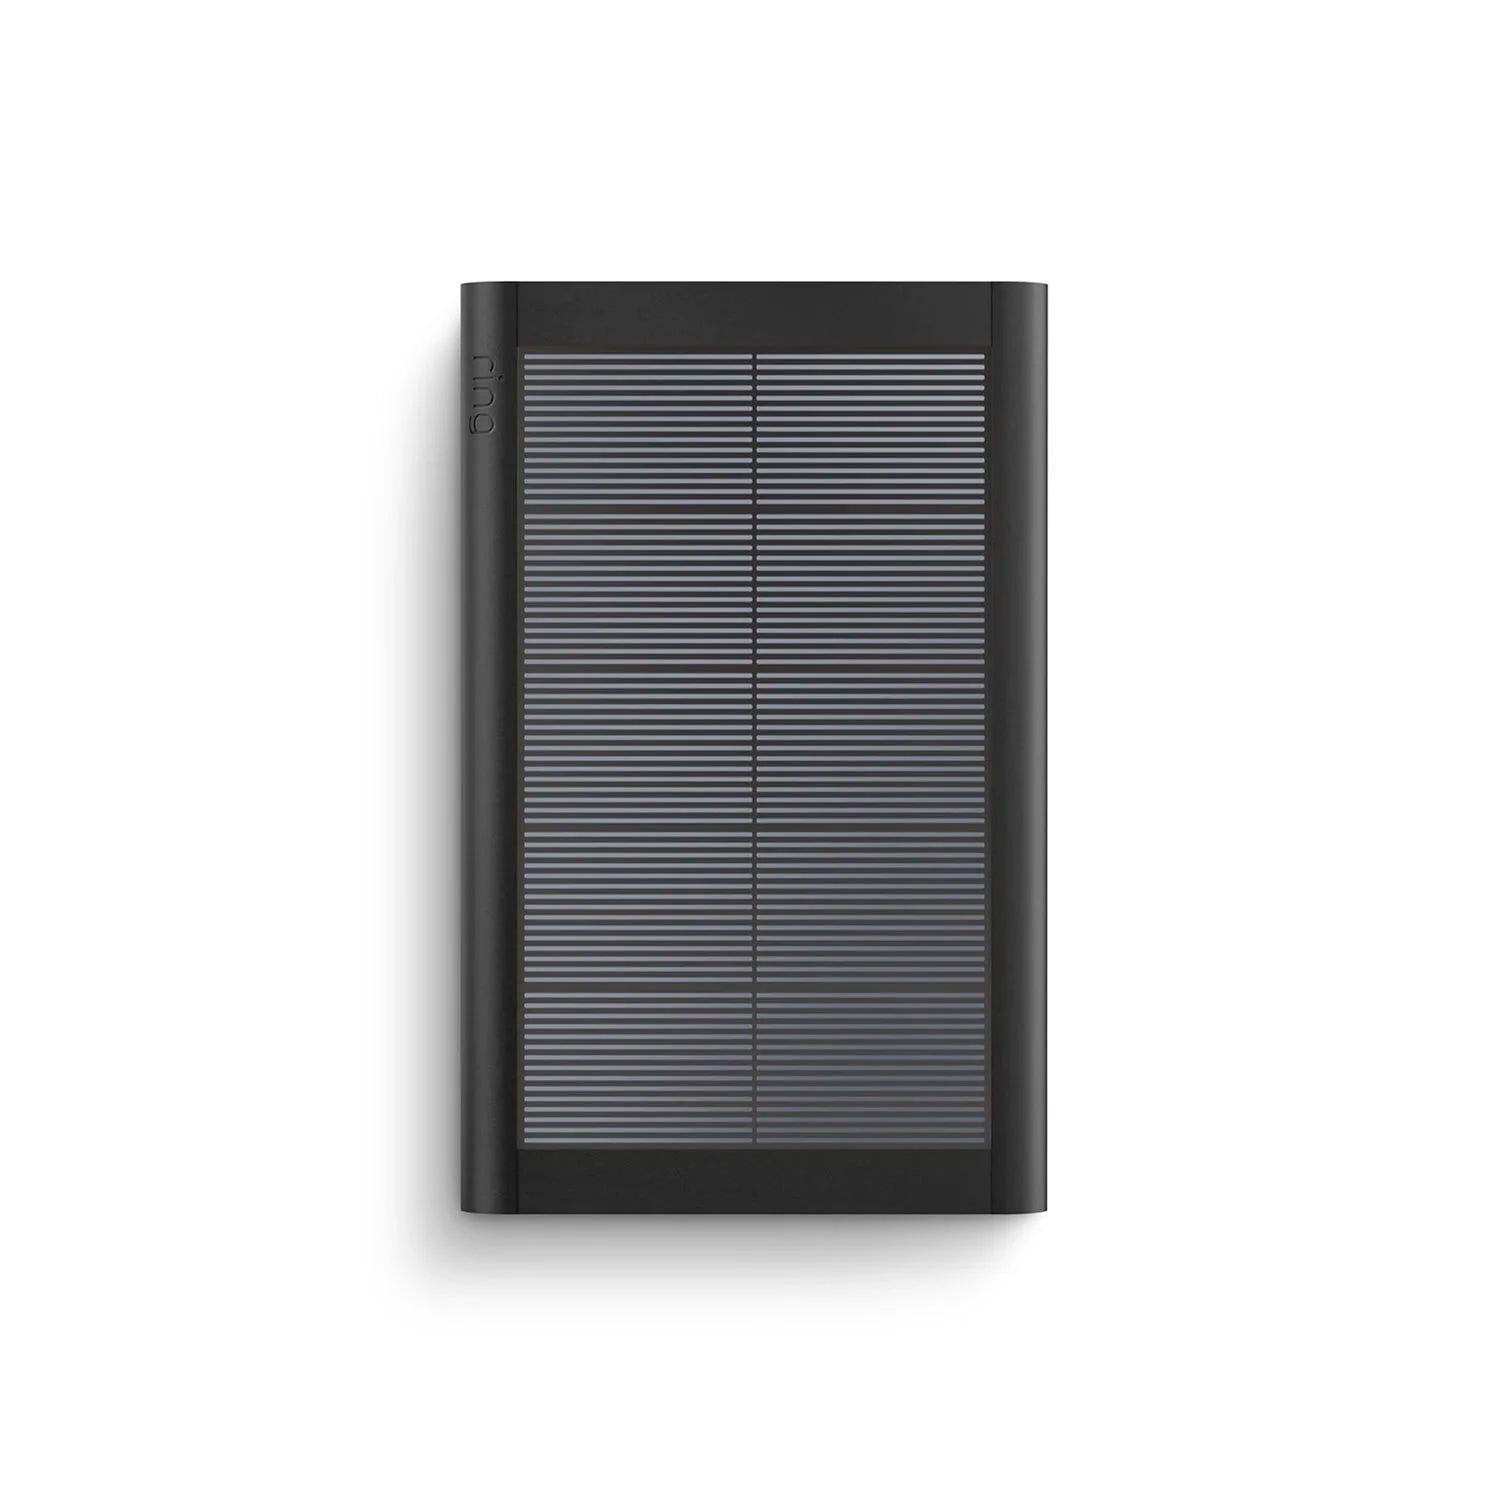 Panel Solar Pequeño (USB C)